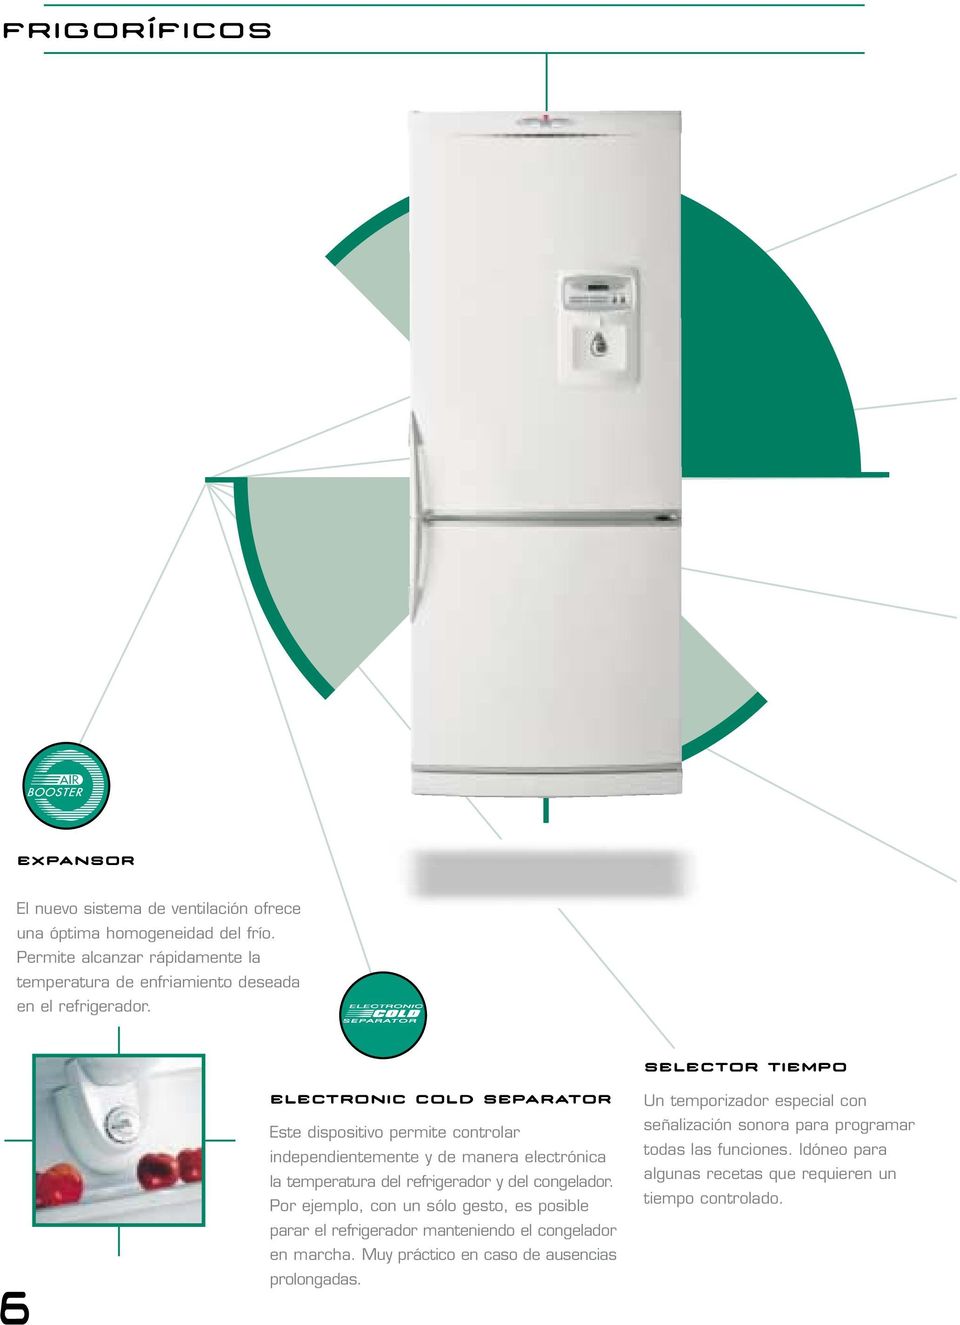 6 ELECTRONIC COLD SEPARATOR Este dispositivo permite controlar independientemente y de manera electrónica la temperatura del refrigerador y del congelador.